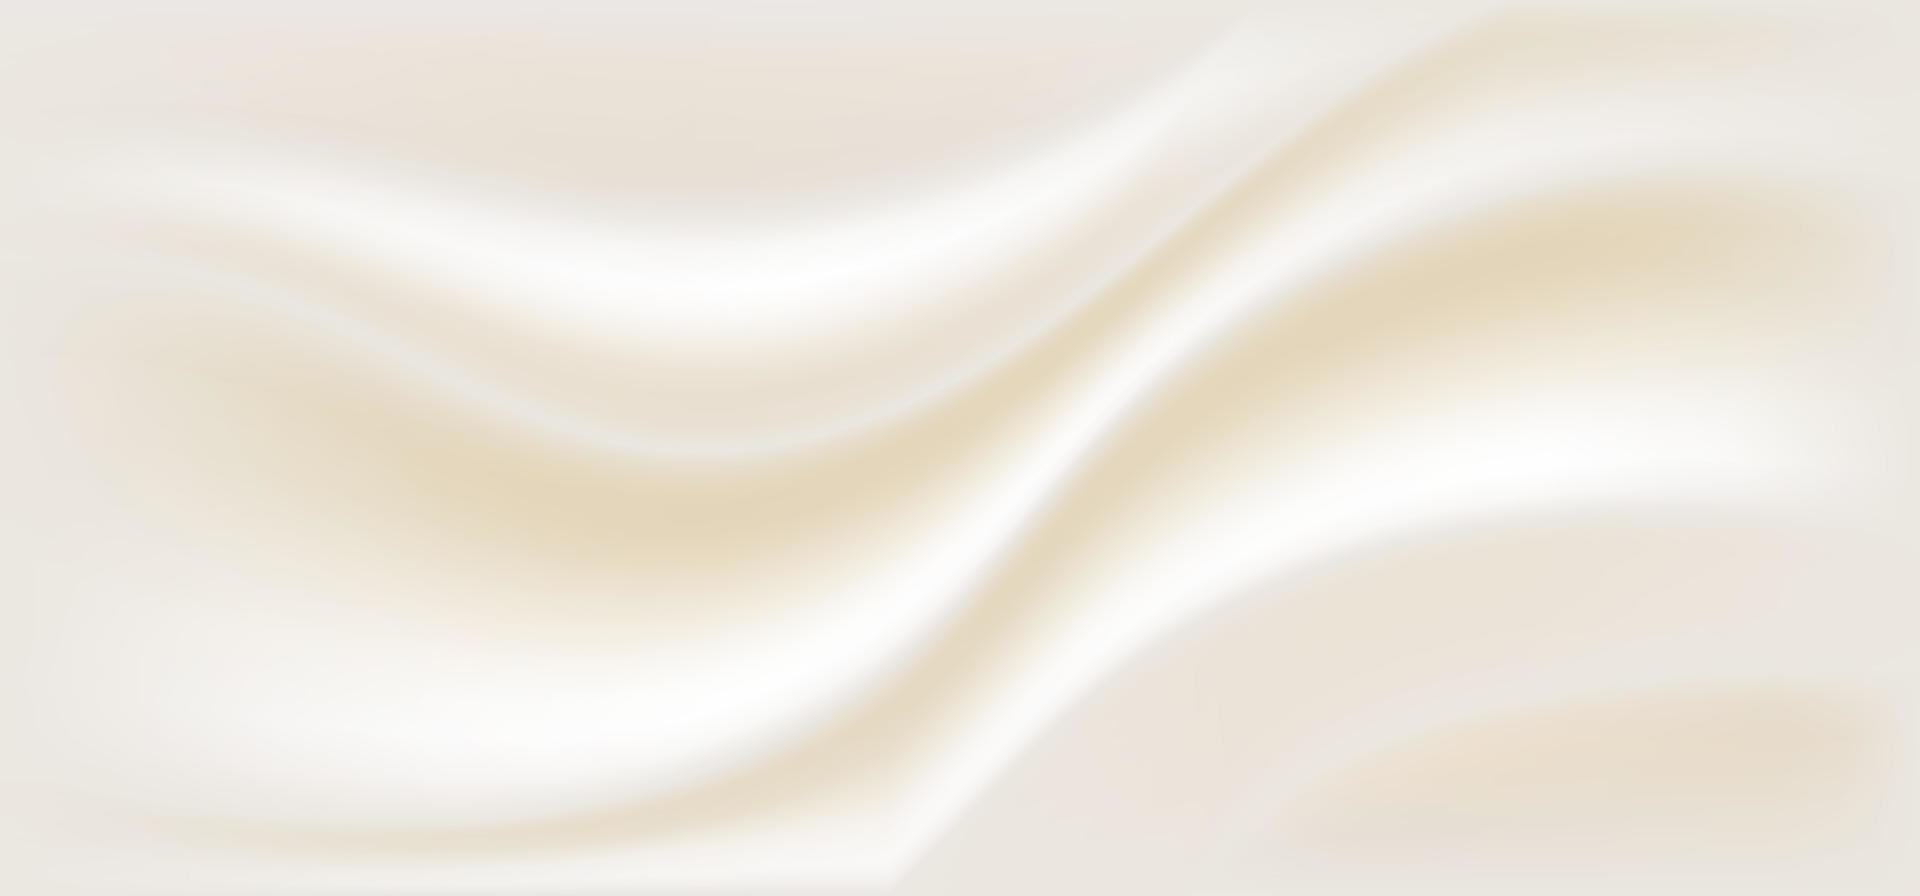 abstrakt tygveck beige brun slät färg bakgrundsstruktur lyxstil vektor